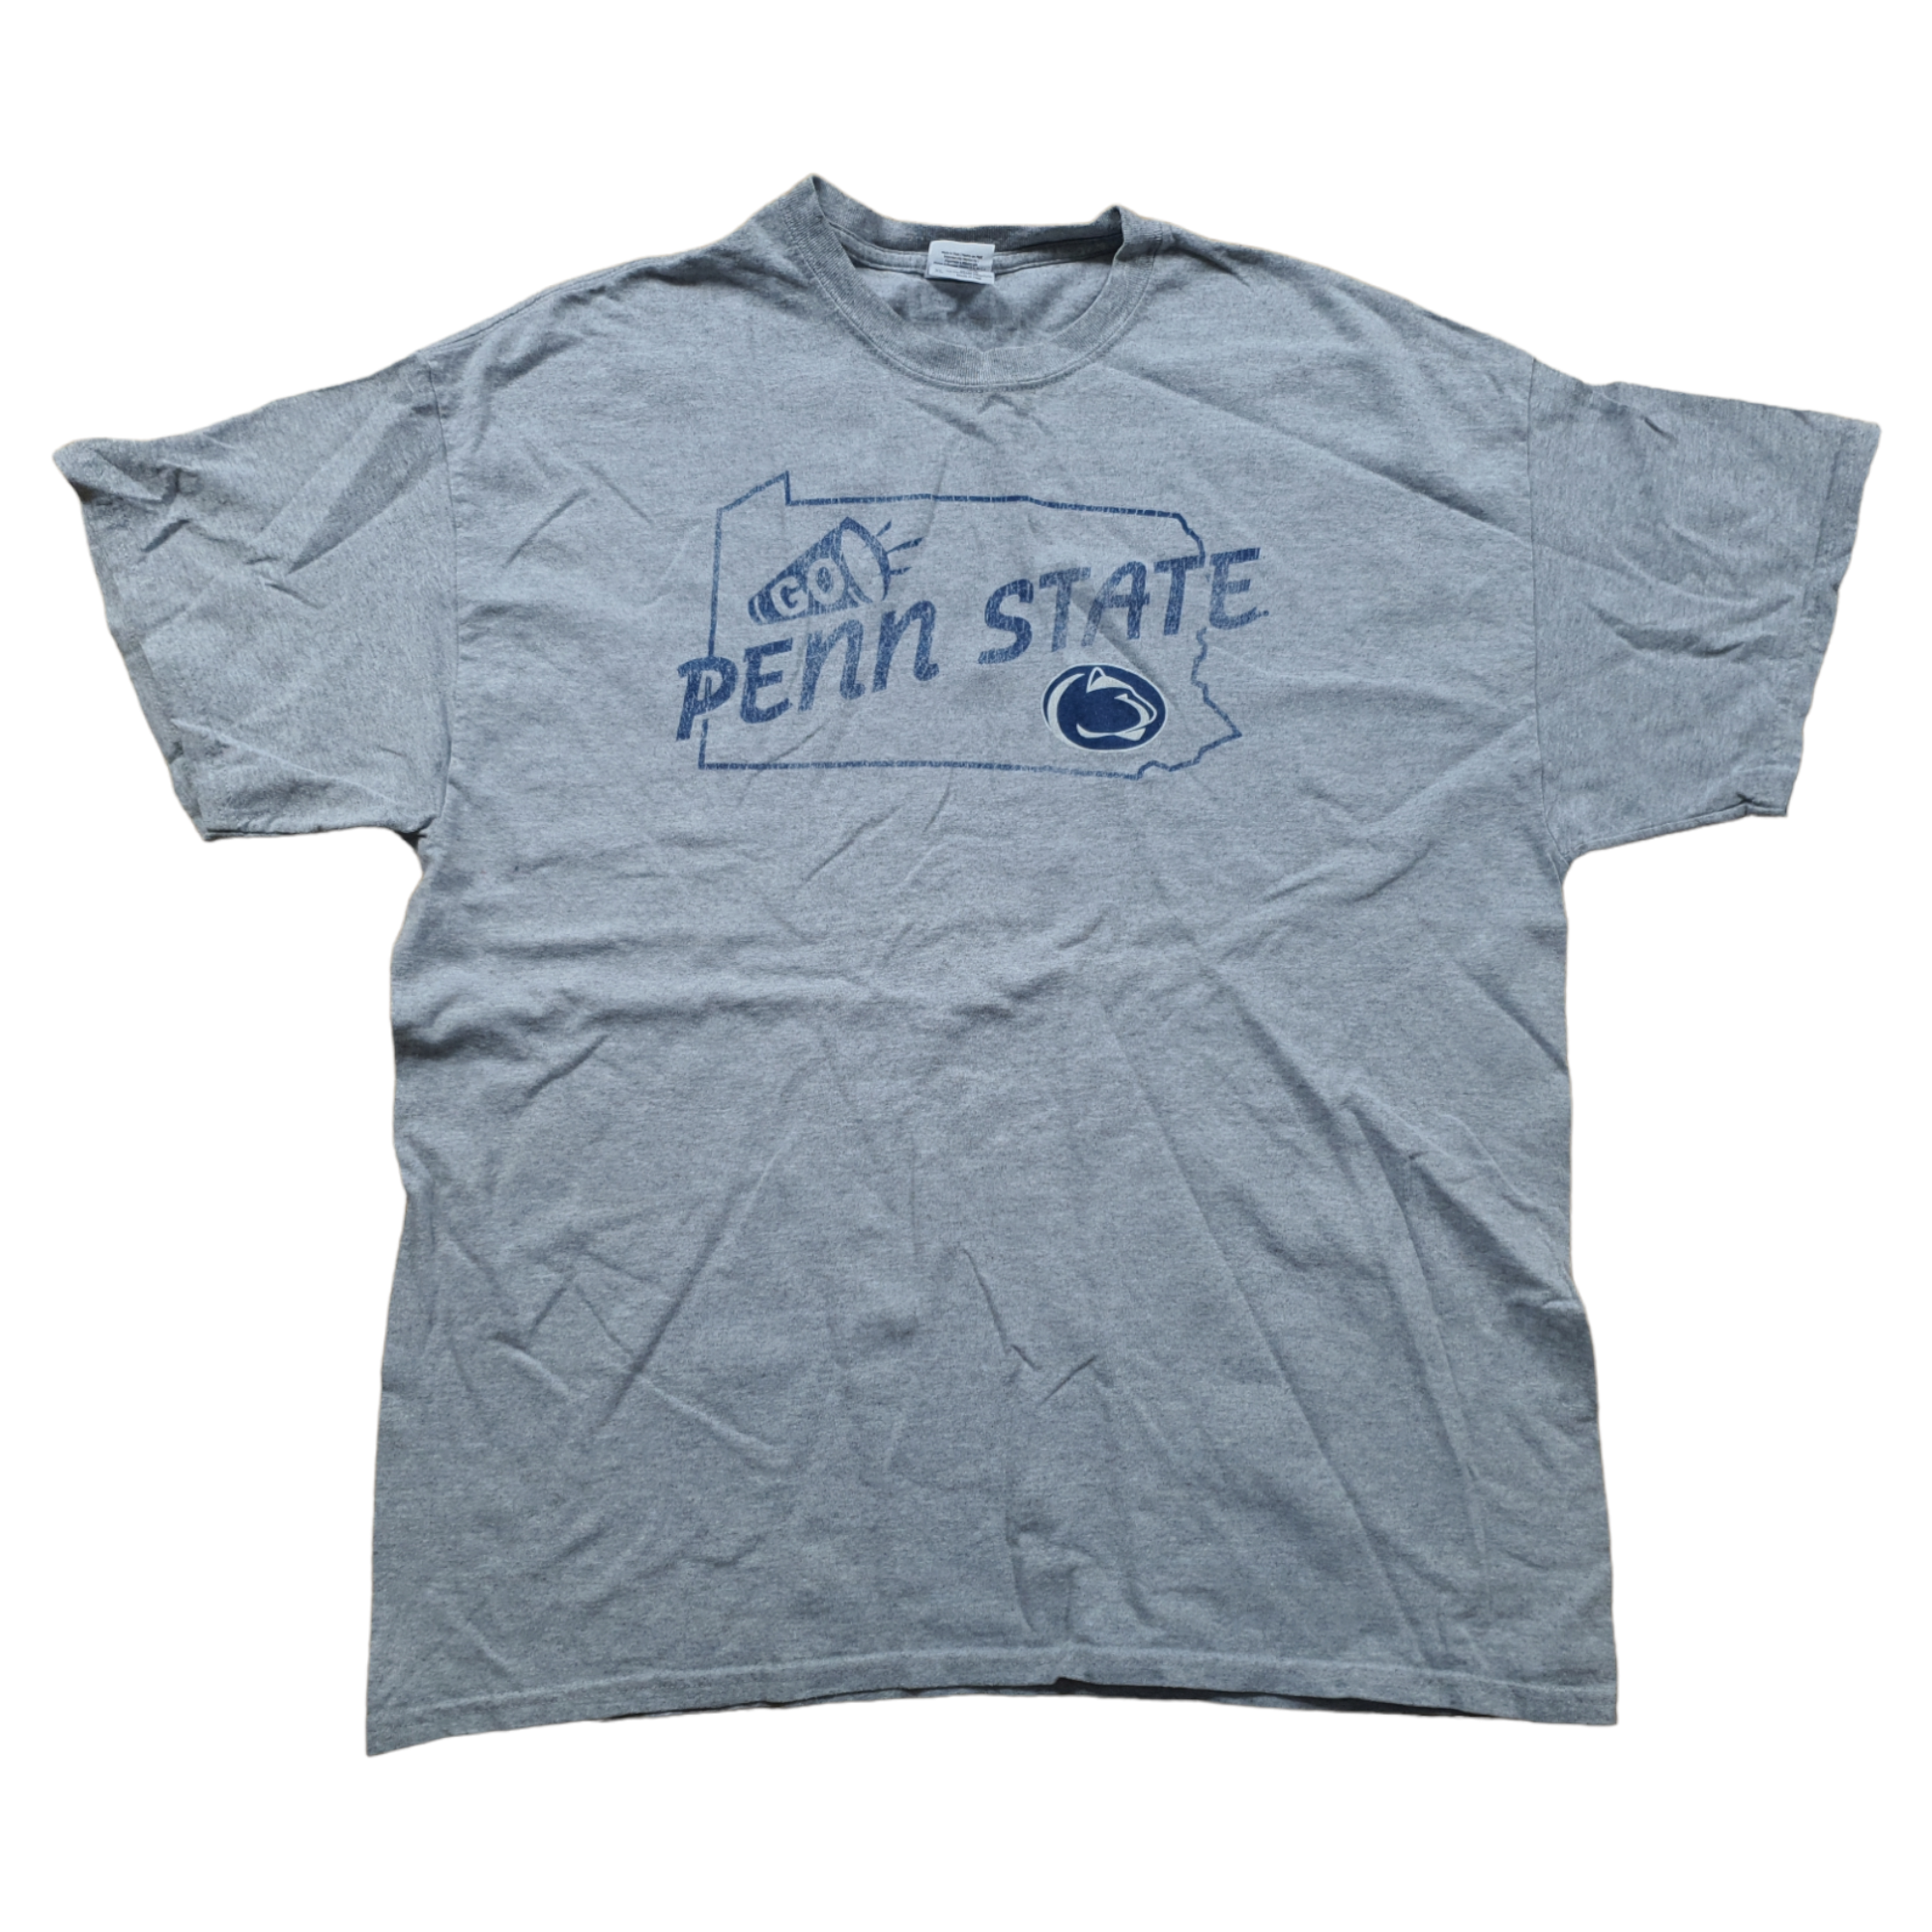 [XL] Gildan Penn State T-Shirt